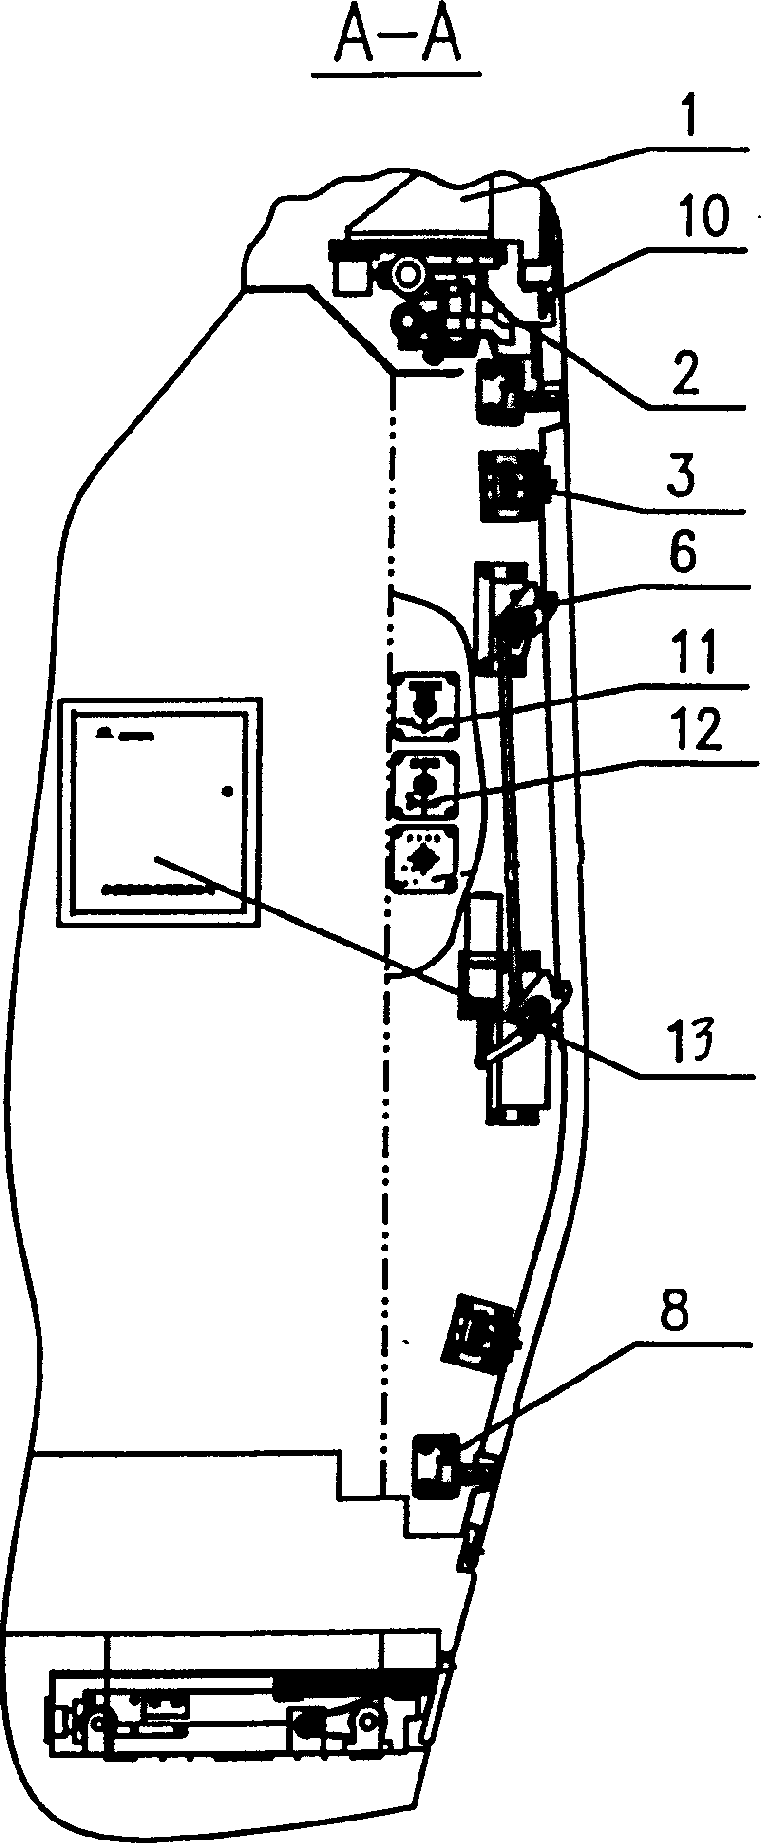 Door system of high-speed railway vehicle